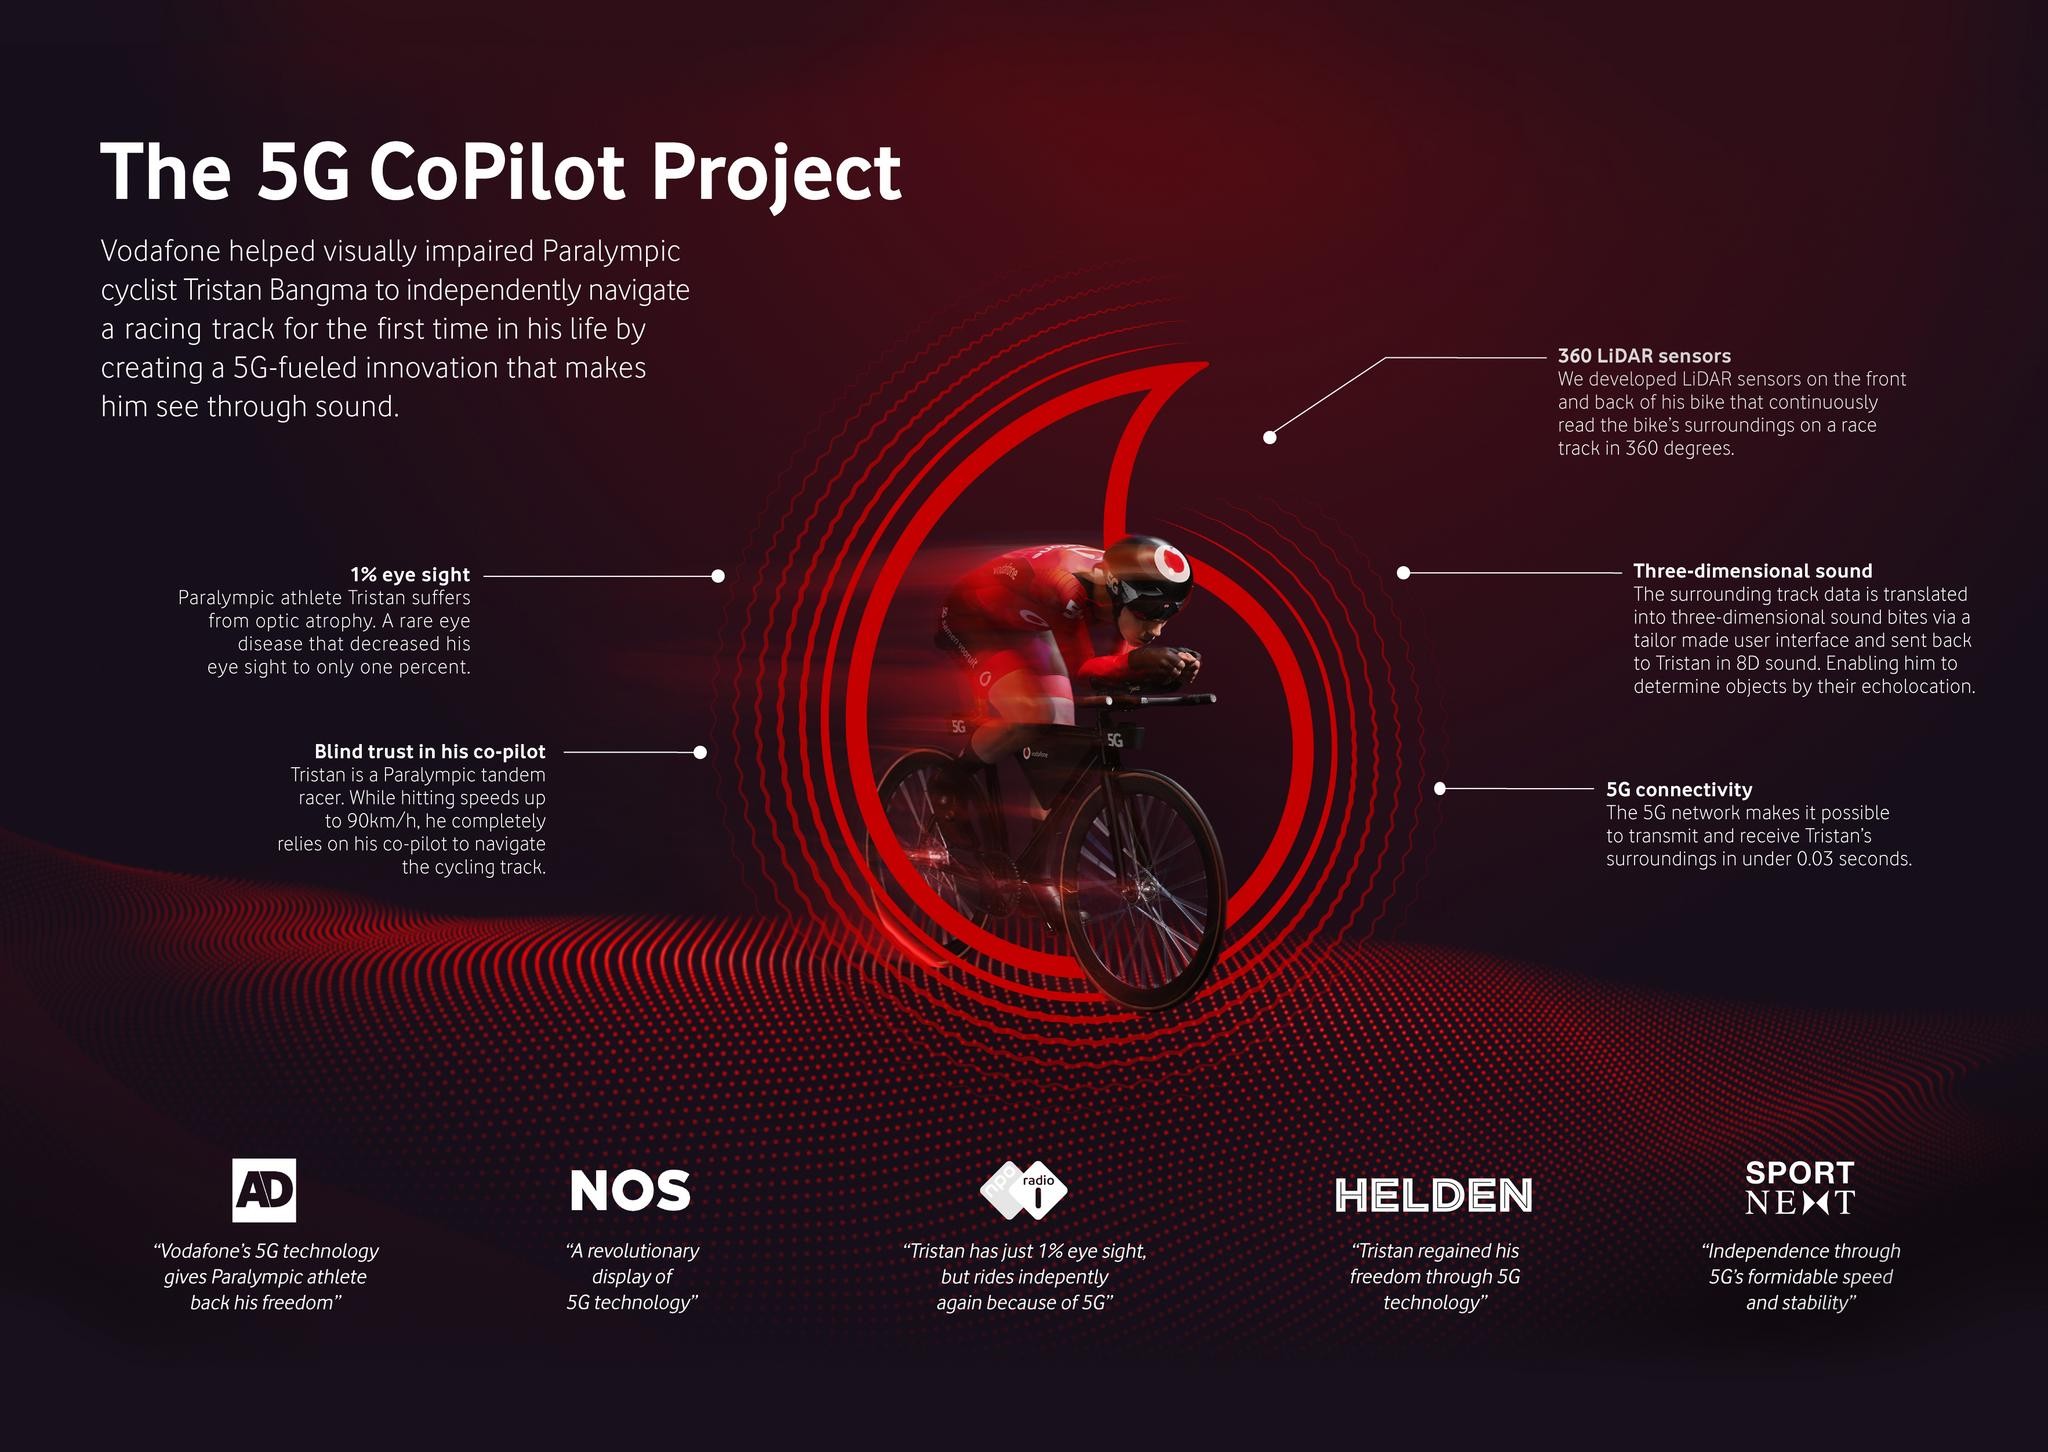 5G CoPilot Project